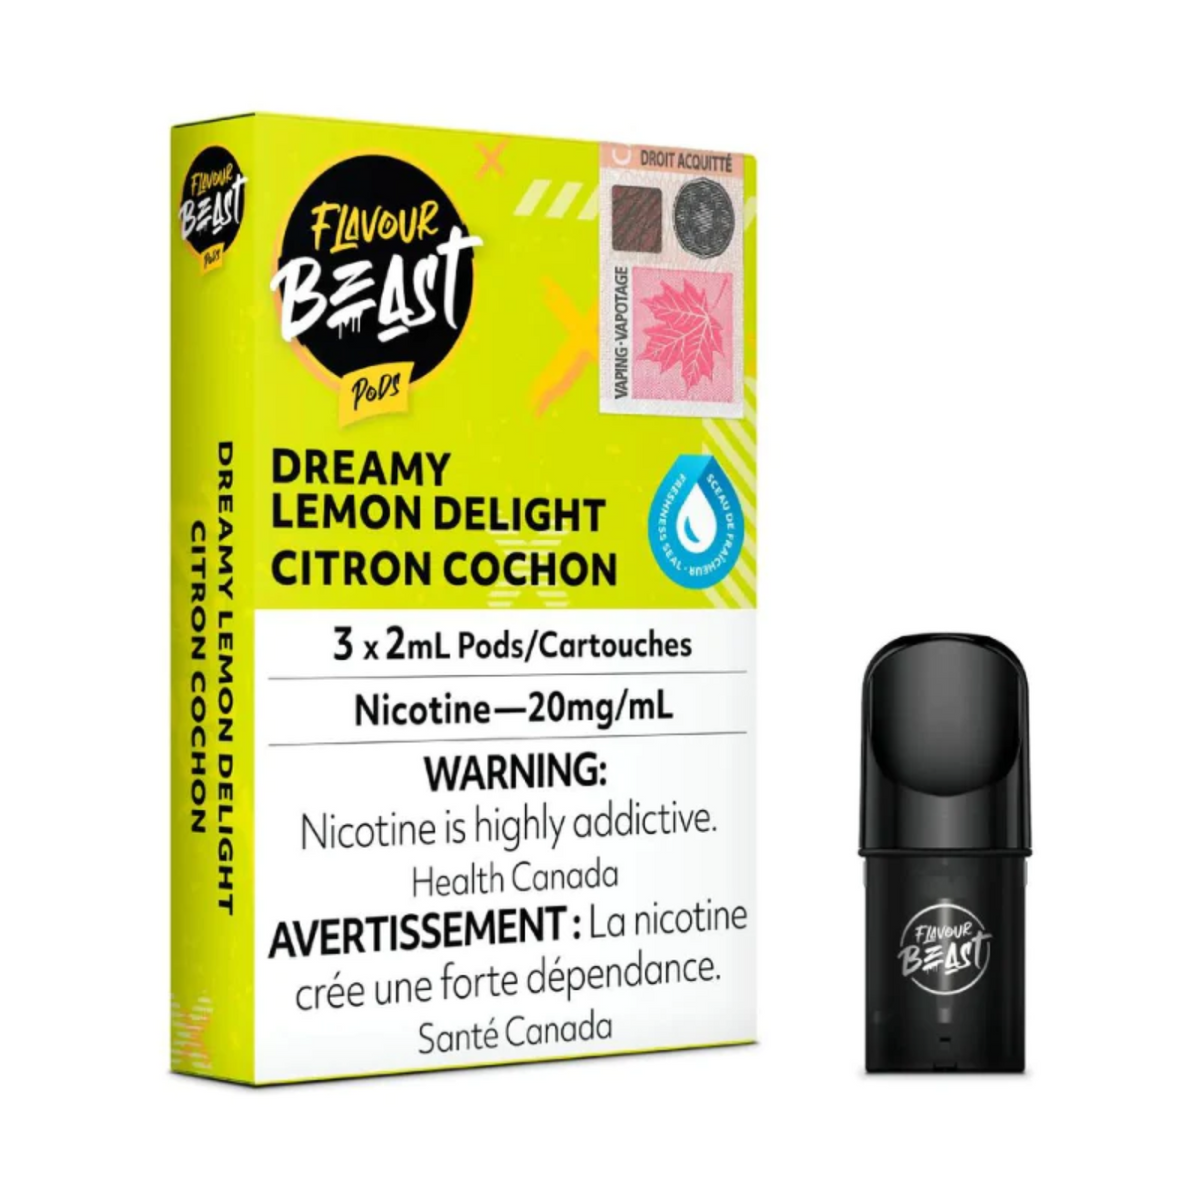 Flavour Beast Pods - Dreamy Lemon Delight